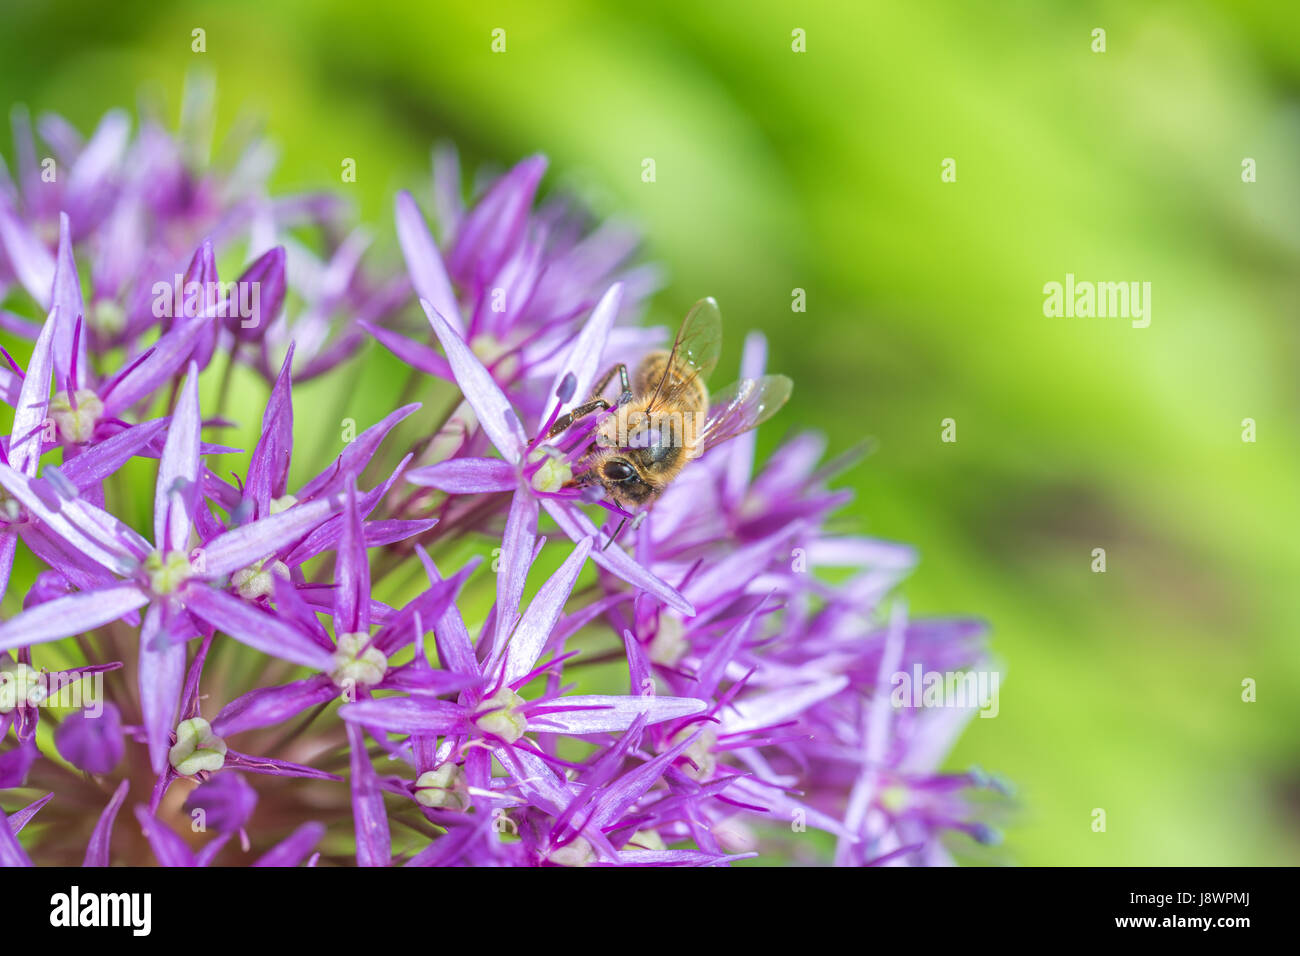 Gros plan d'une abeille sur une fleur pourpre bulbes d'allium Banque D'Images